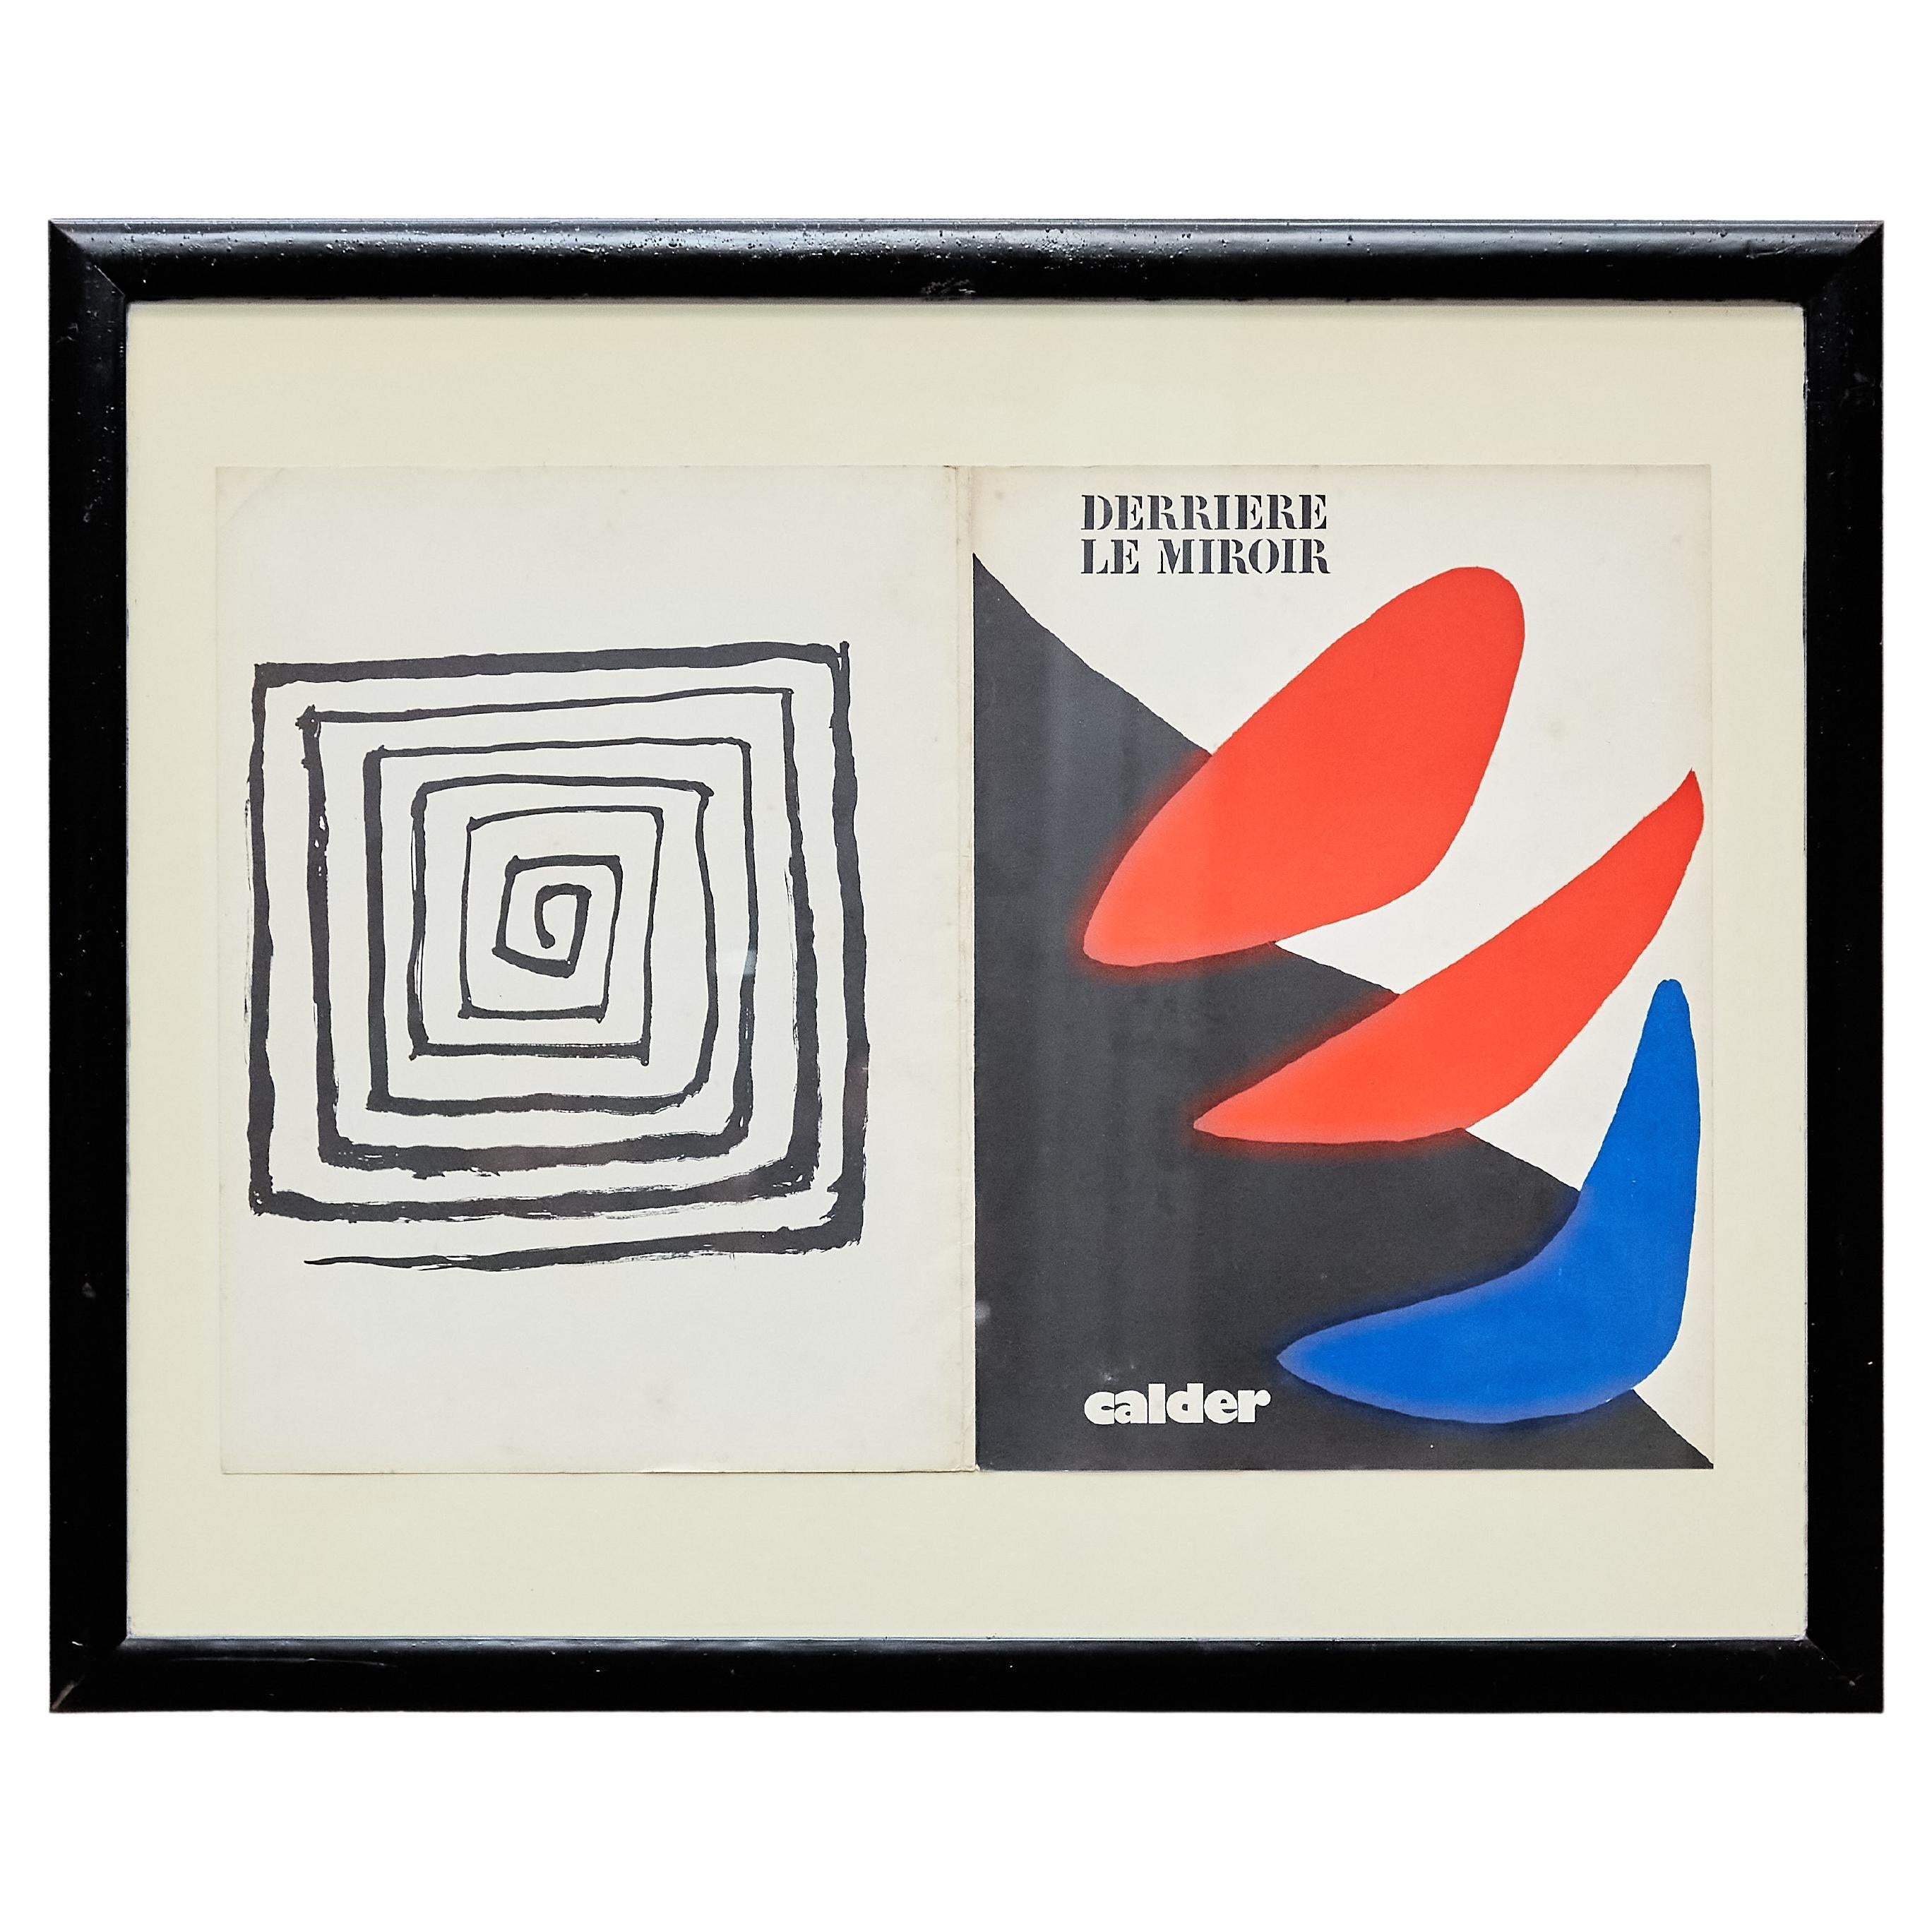 Magazine encadré « Darriere Le Miroir » d'Alexander Calder, vers 1971